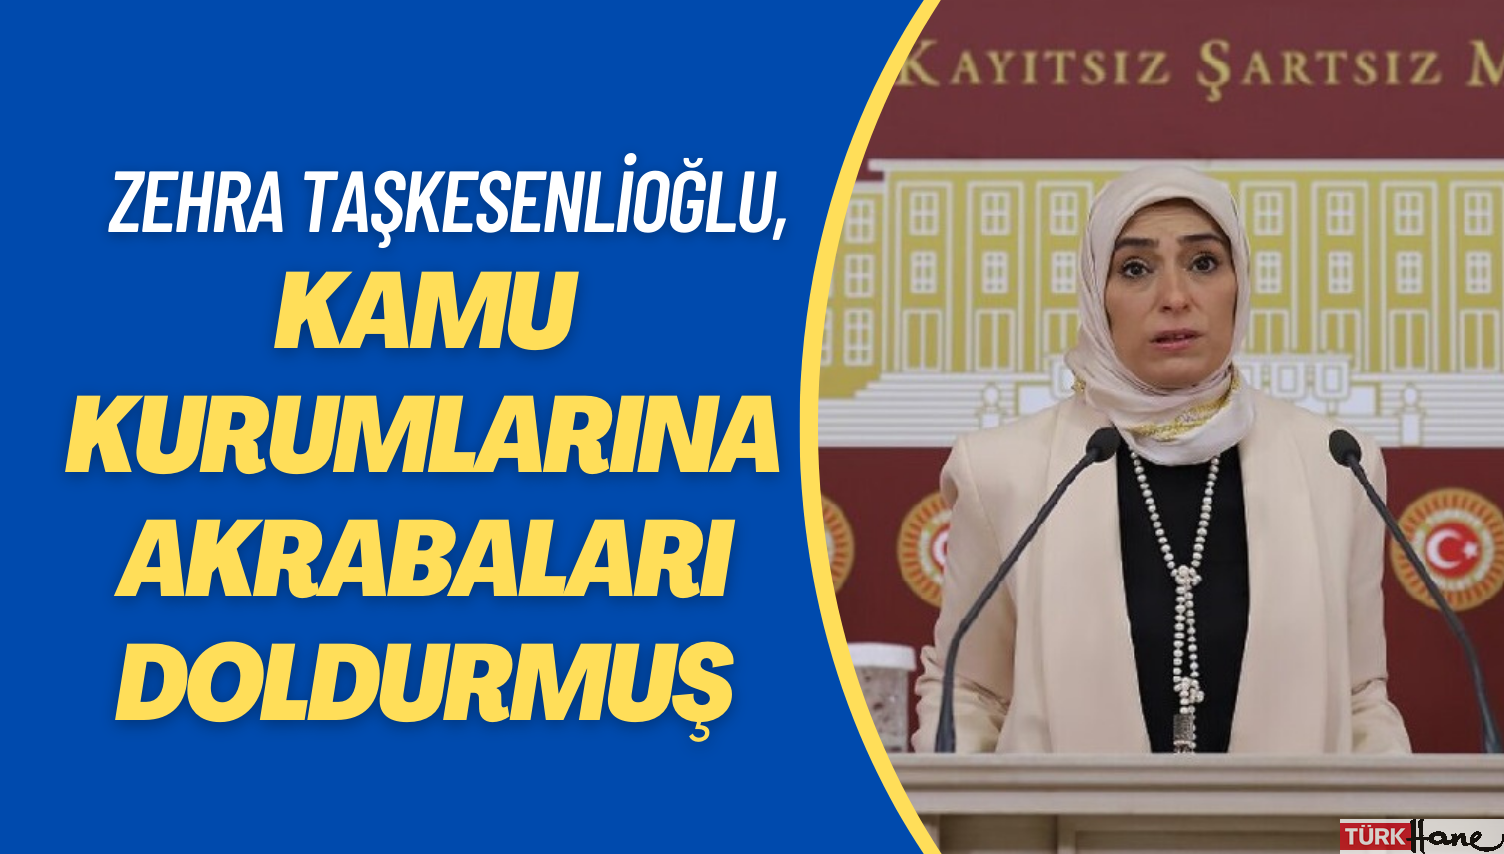 Erzurum’da kamu kurumlarını Zehra Taşkesenlioğlu’nun akrabaları doldurmuş